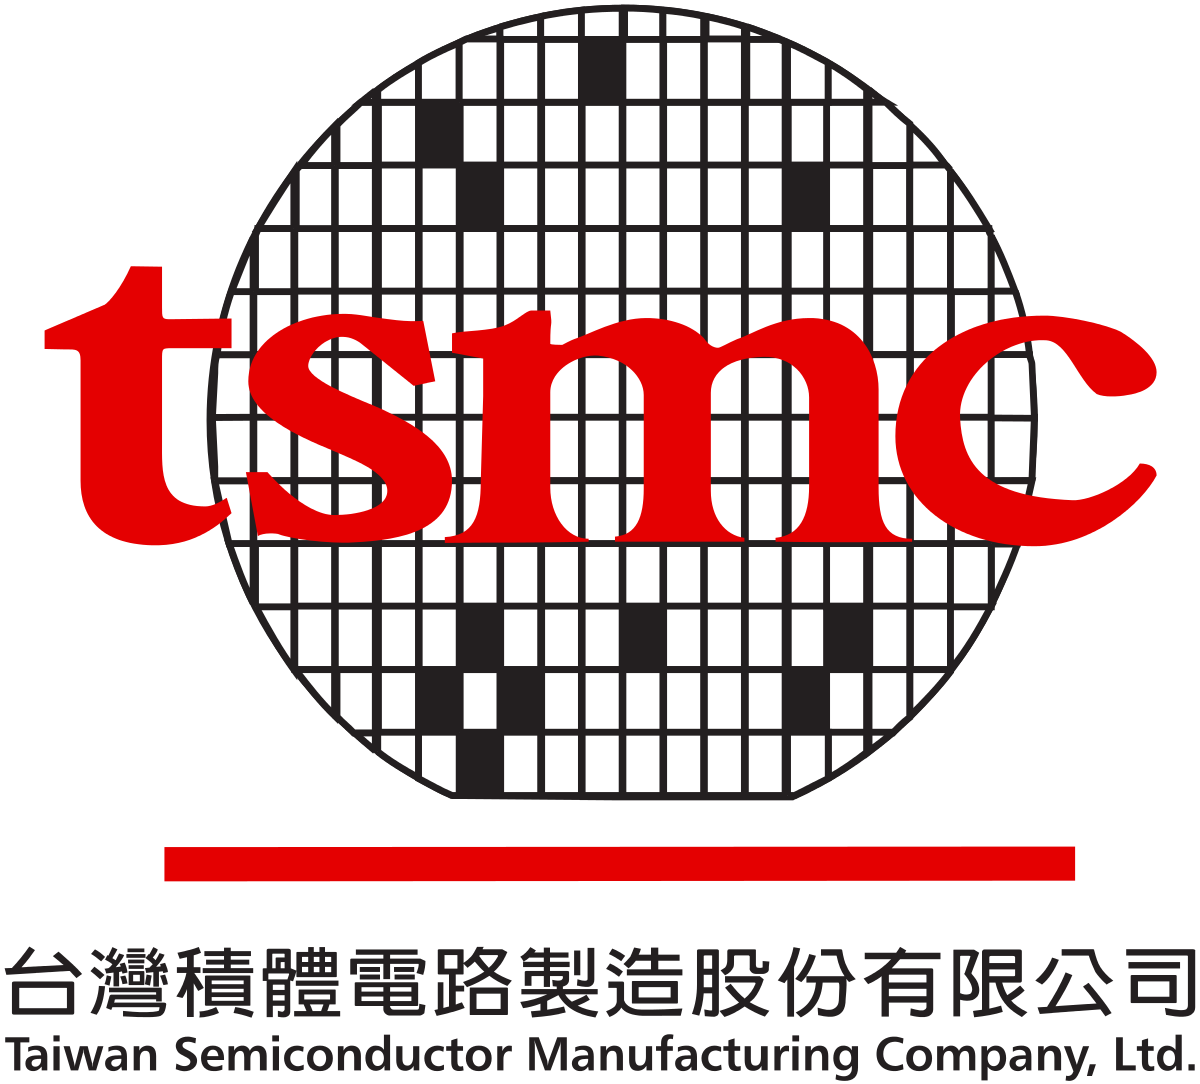 Selon le classement du PwC, TSMC est au 23e rang mondial